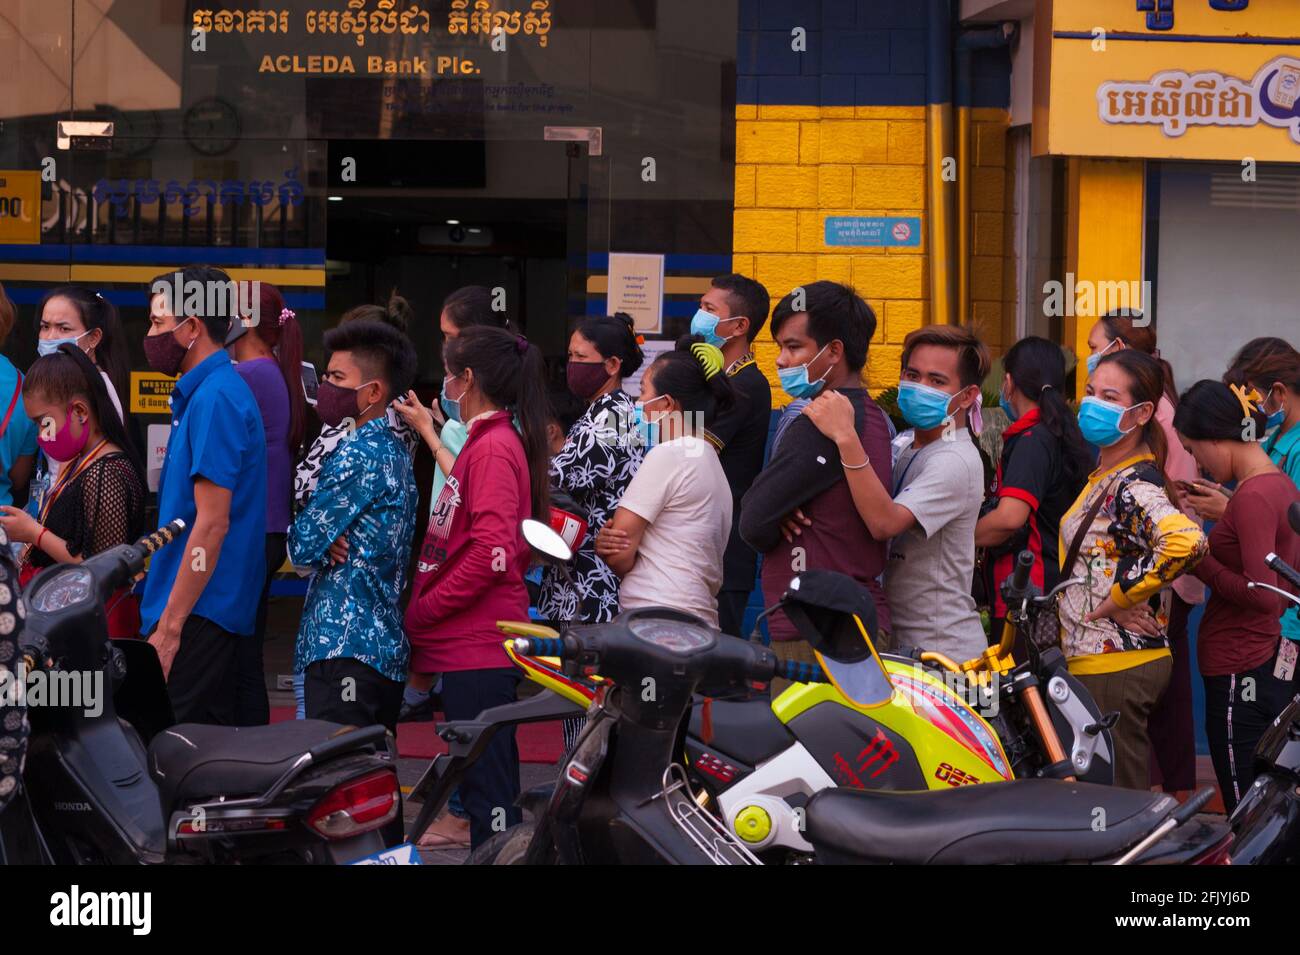 Keine soziale Distanzierung, kein Chaos als kambodschanische Arbeiter in der Bekleidungsfabrik, die Schutzmasken / -Abdeckungen tragen, sich bei einer Bank anstellen, um ihre Löhne zu sammeln, schließt Phnom Penh am ersten Tag vor dem kambodschanischen Neujahr während der Coronavirus-Pandemie alle Straßen in und aus der Stadt. Steung Meanchey, Phnom Penh, Kambodscha. April 2020. © Kraig Lieb Stockfoto